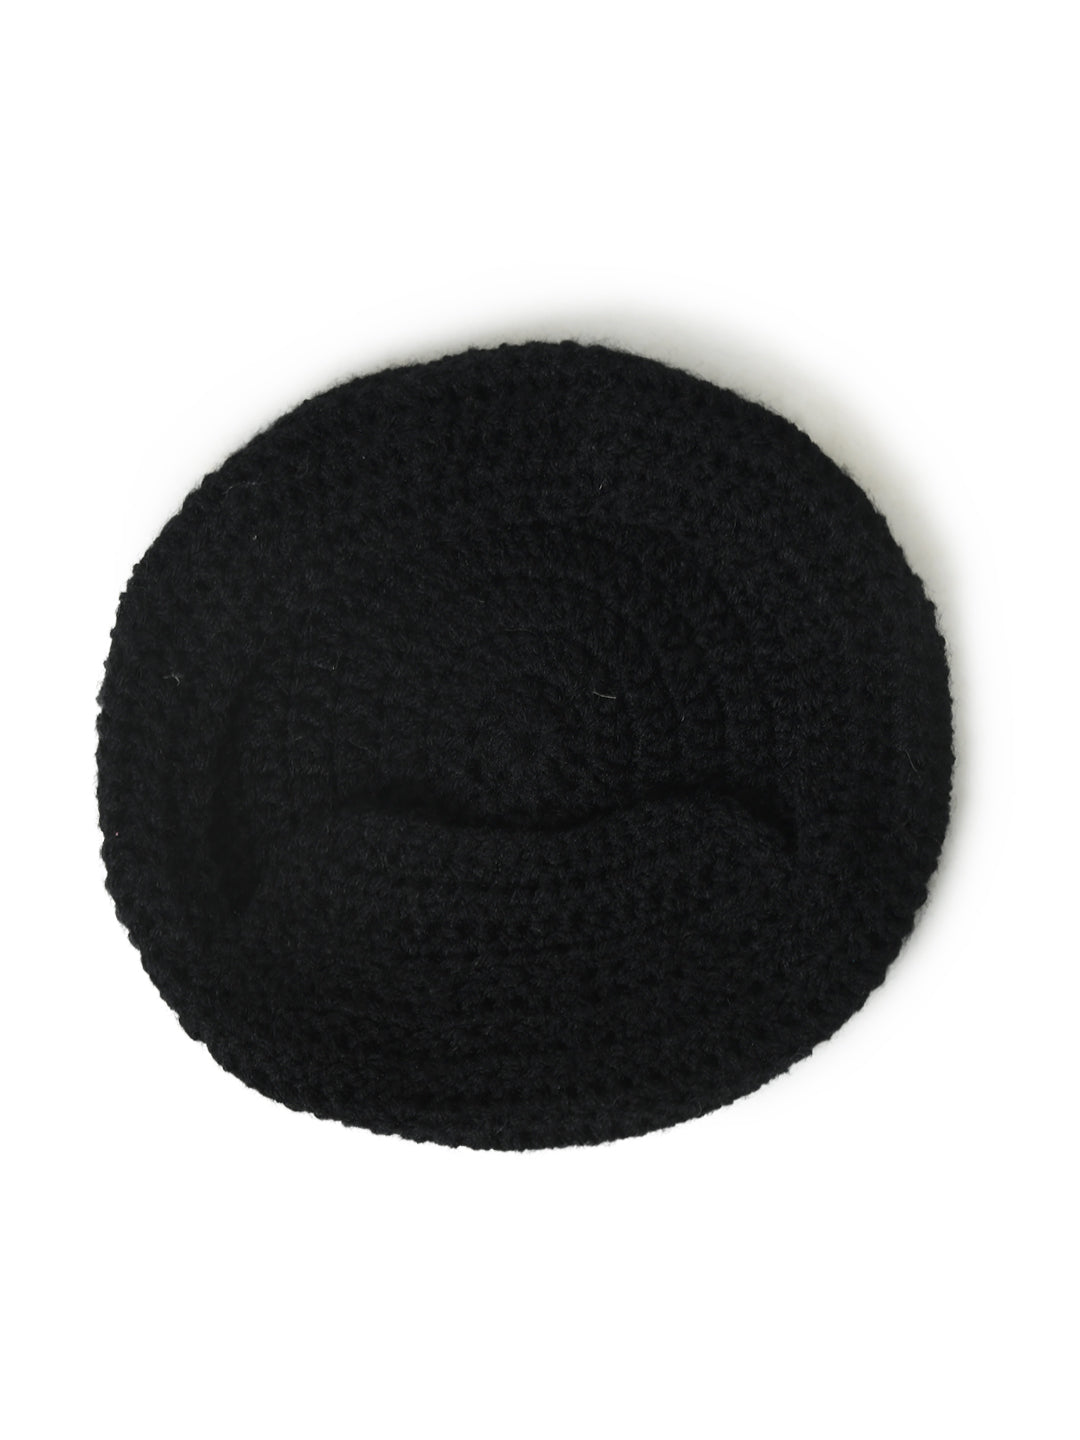 Pack of 2 Unisex Grey & Black Woolen Beanie Winter Warm Cap for Kids